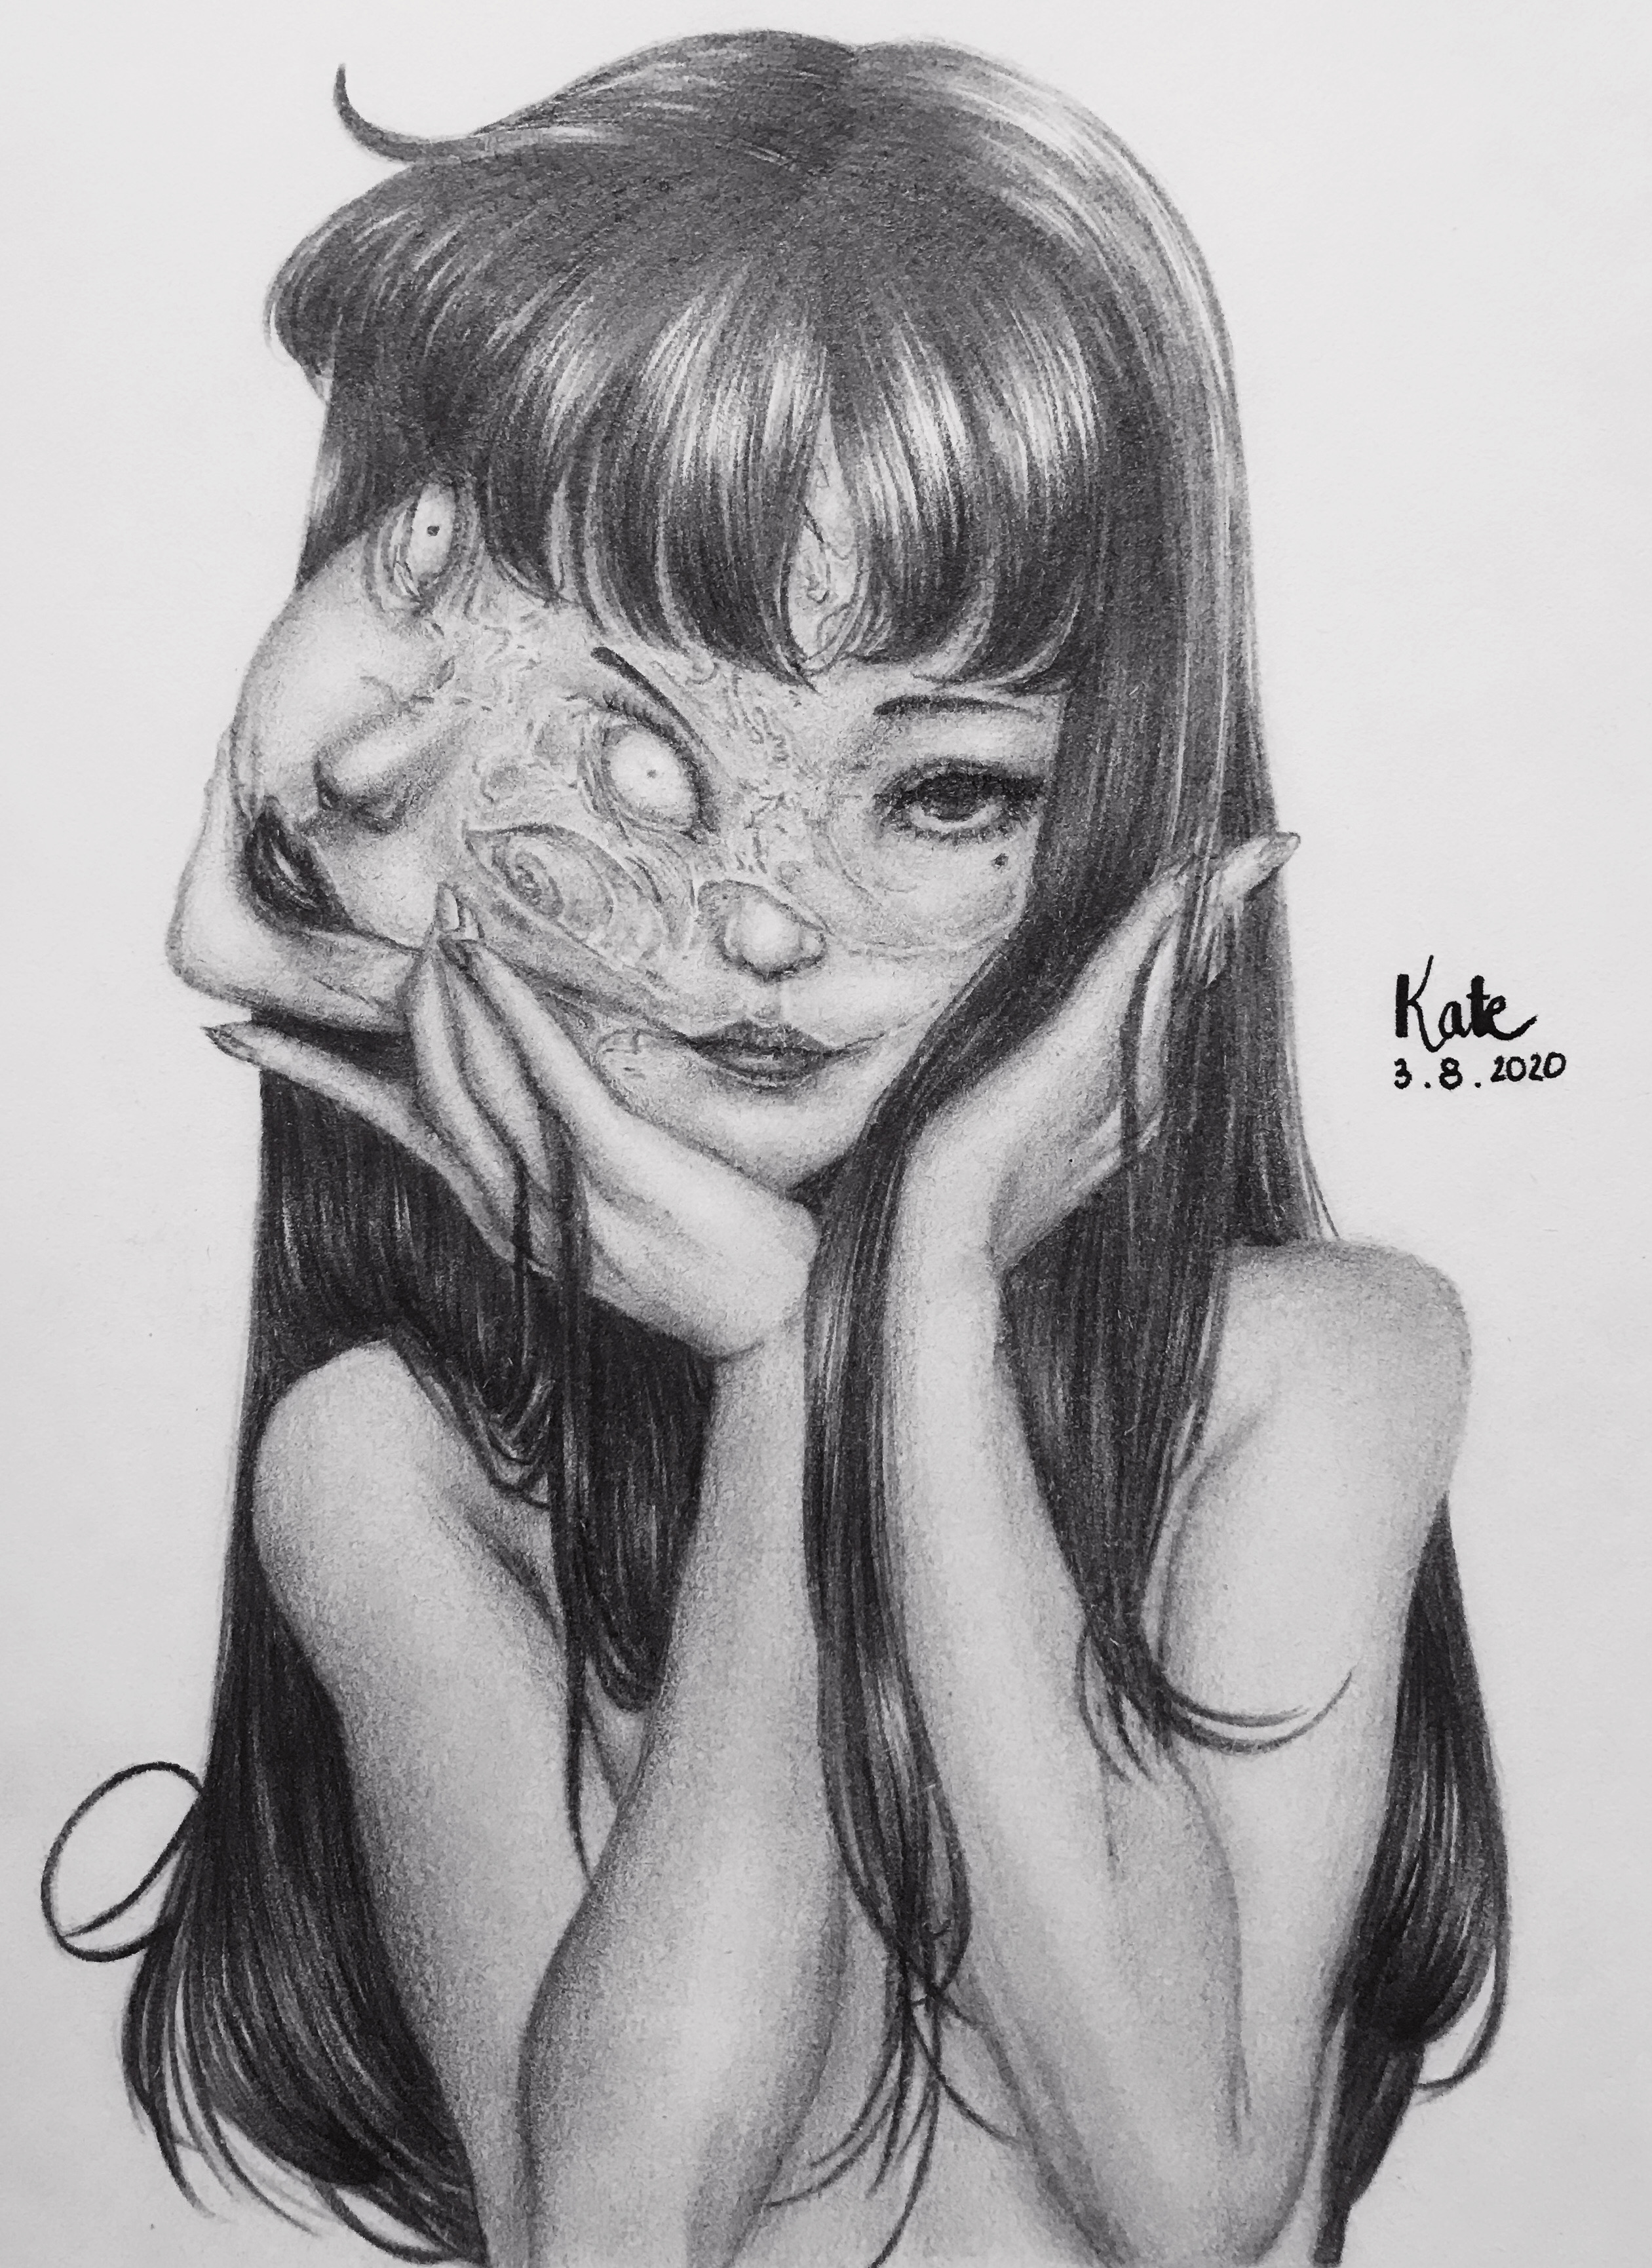 Tomie (Junji Ito) fan art by daenerys0511 on DeviantArt